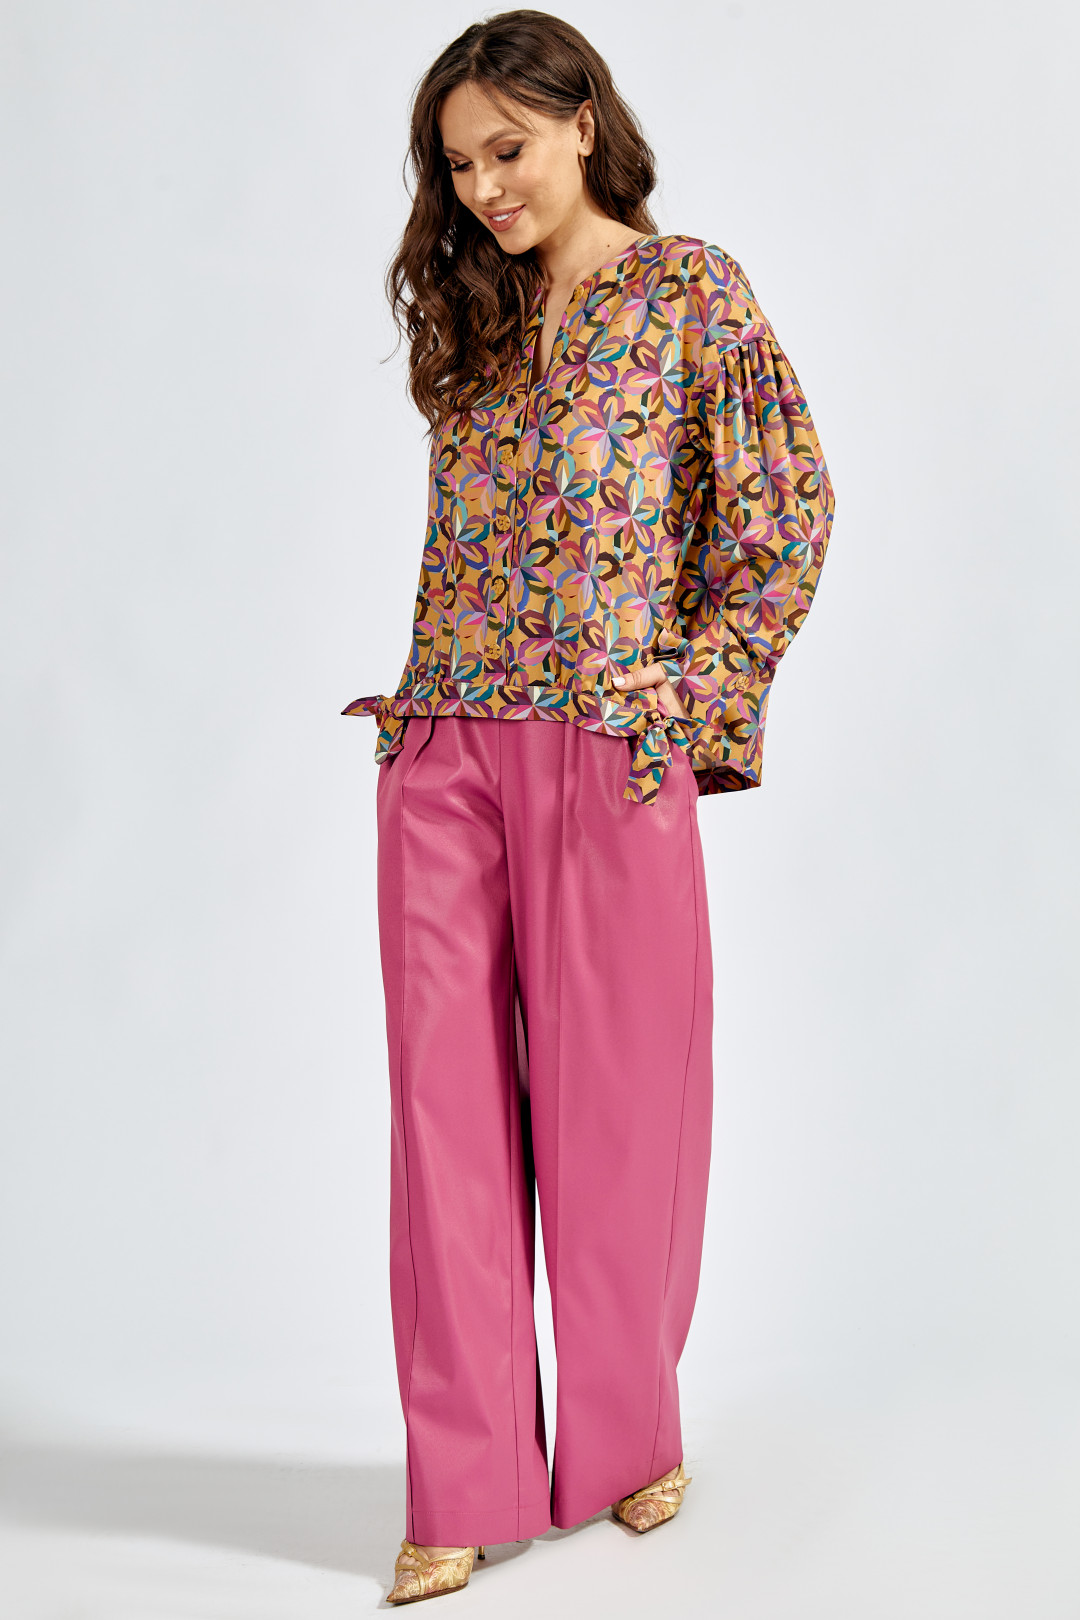 Блузка ТЭФФИ-стиль 1503/1 цветная фиалка